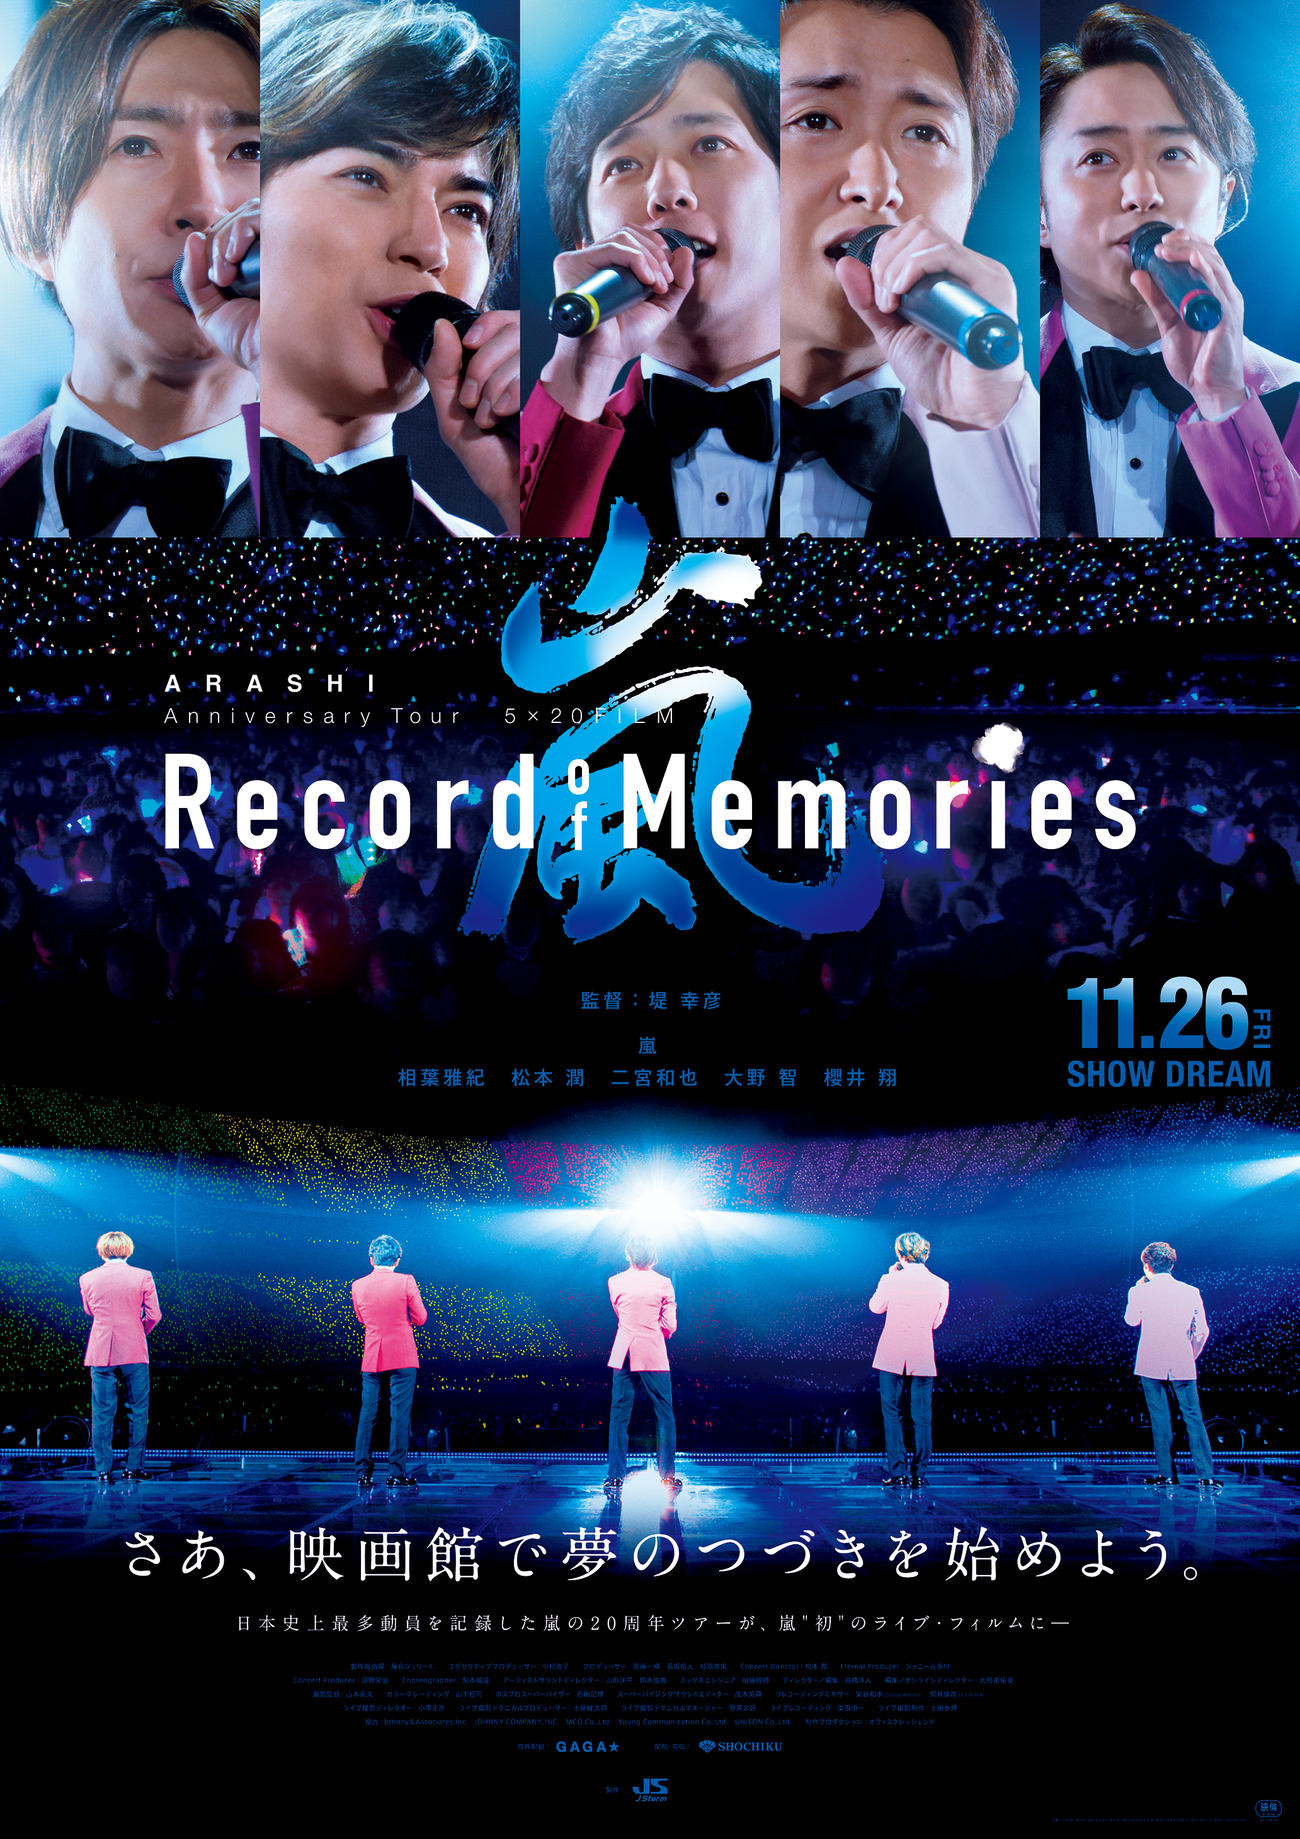 嵐初のライブ映画「ARASHI Anniversary Tour 5×20 FILM　“Record of Memories”」の通常版ポスター